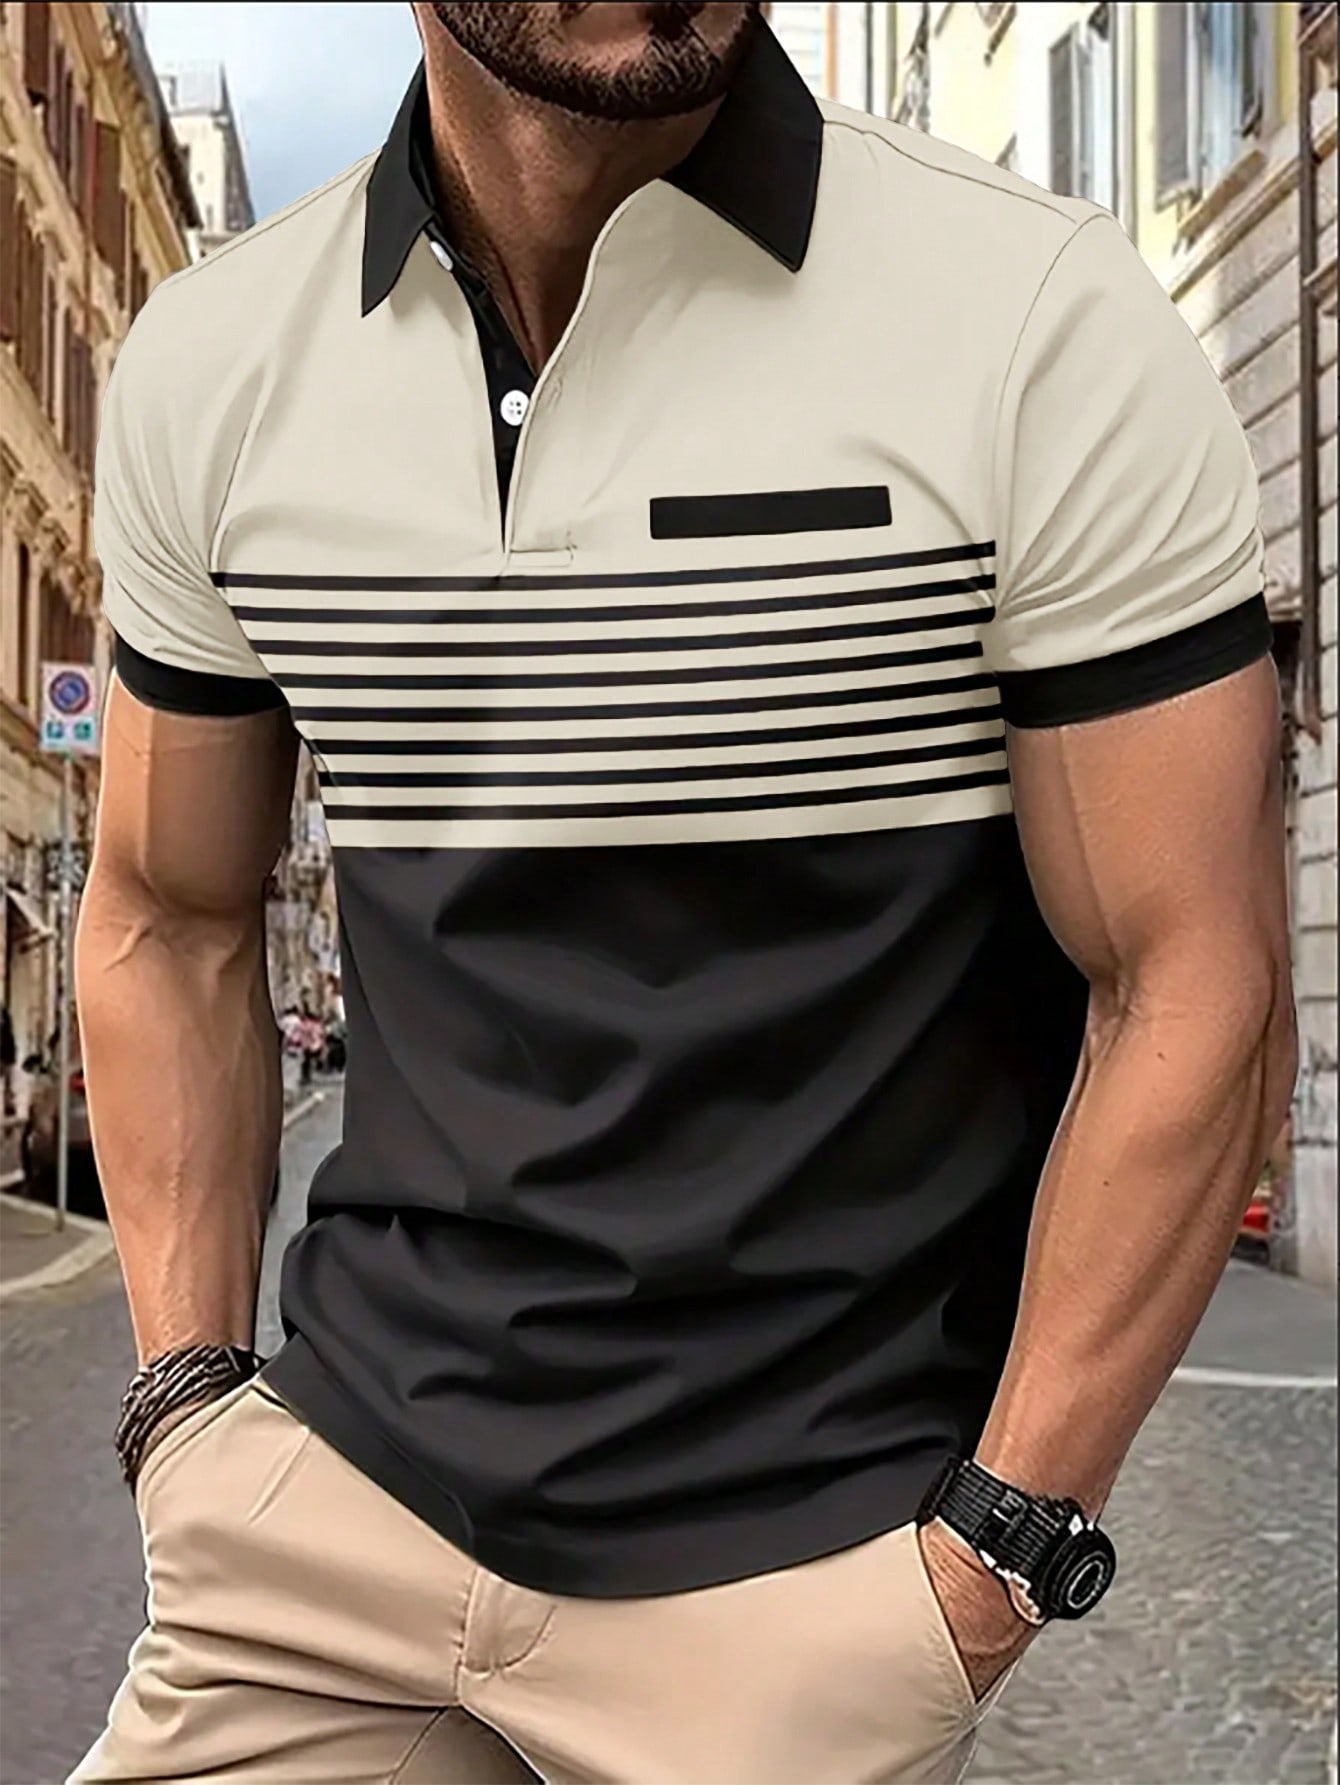 Мужская рубашка-поло контрастного цвета Manfinity Homme, хаки рубашка мужская из ткани оксфорд с коротким рукавом в полоску 100% хлопок